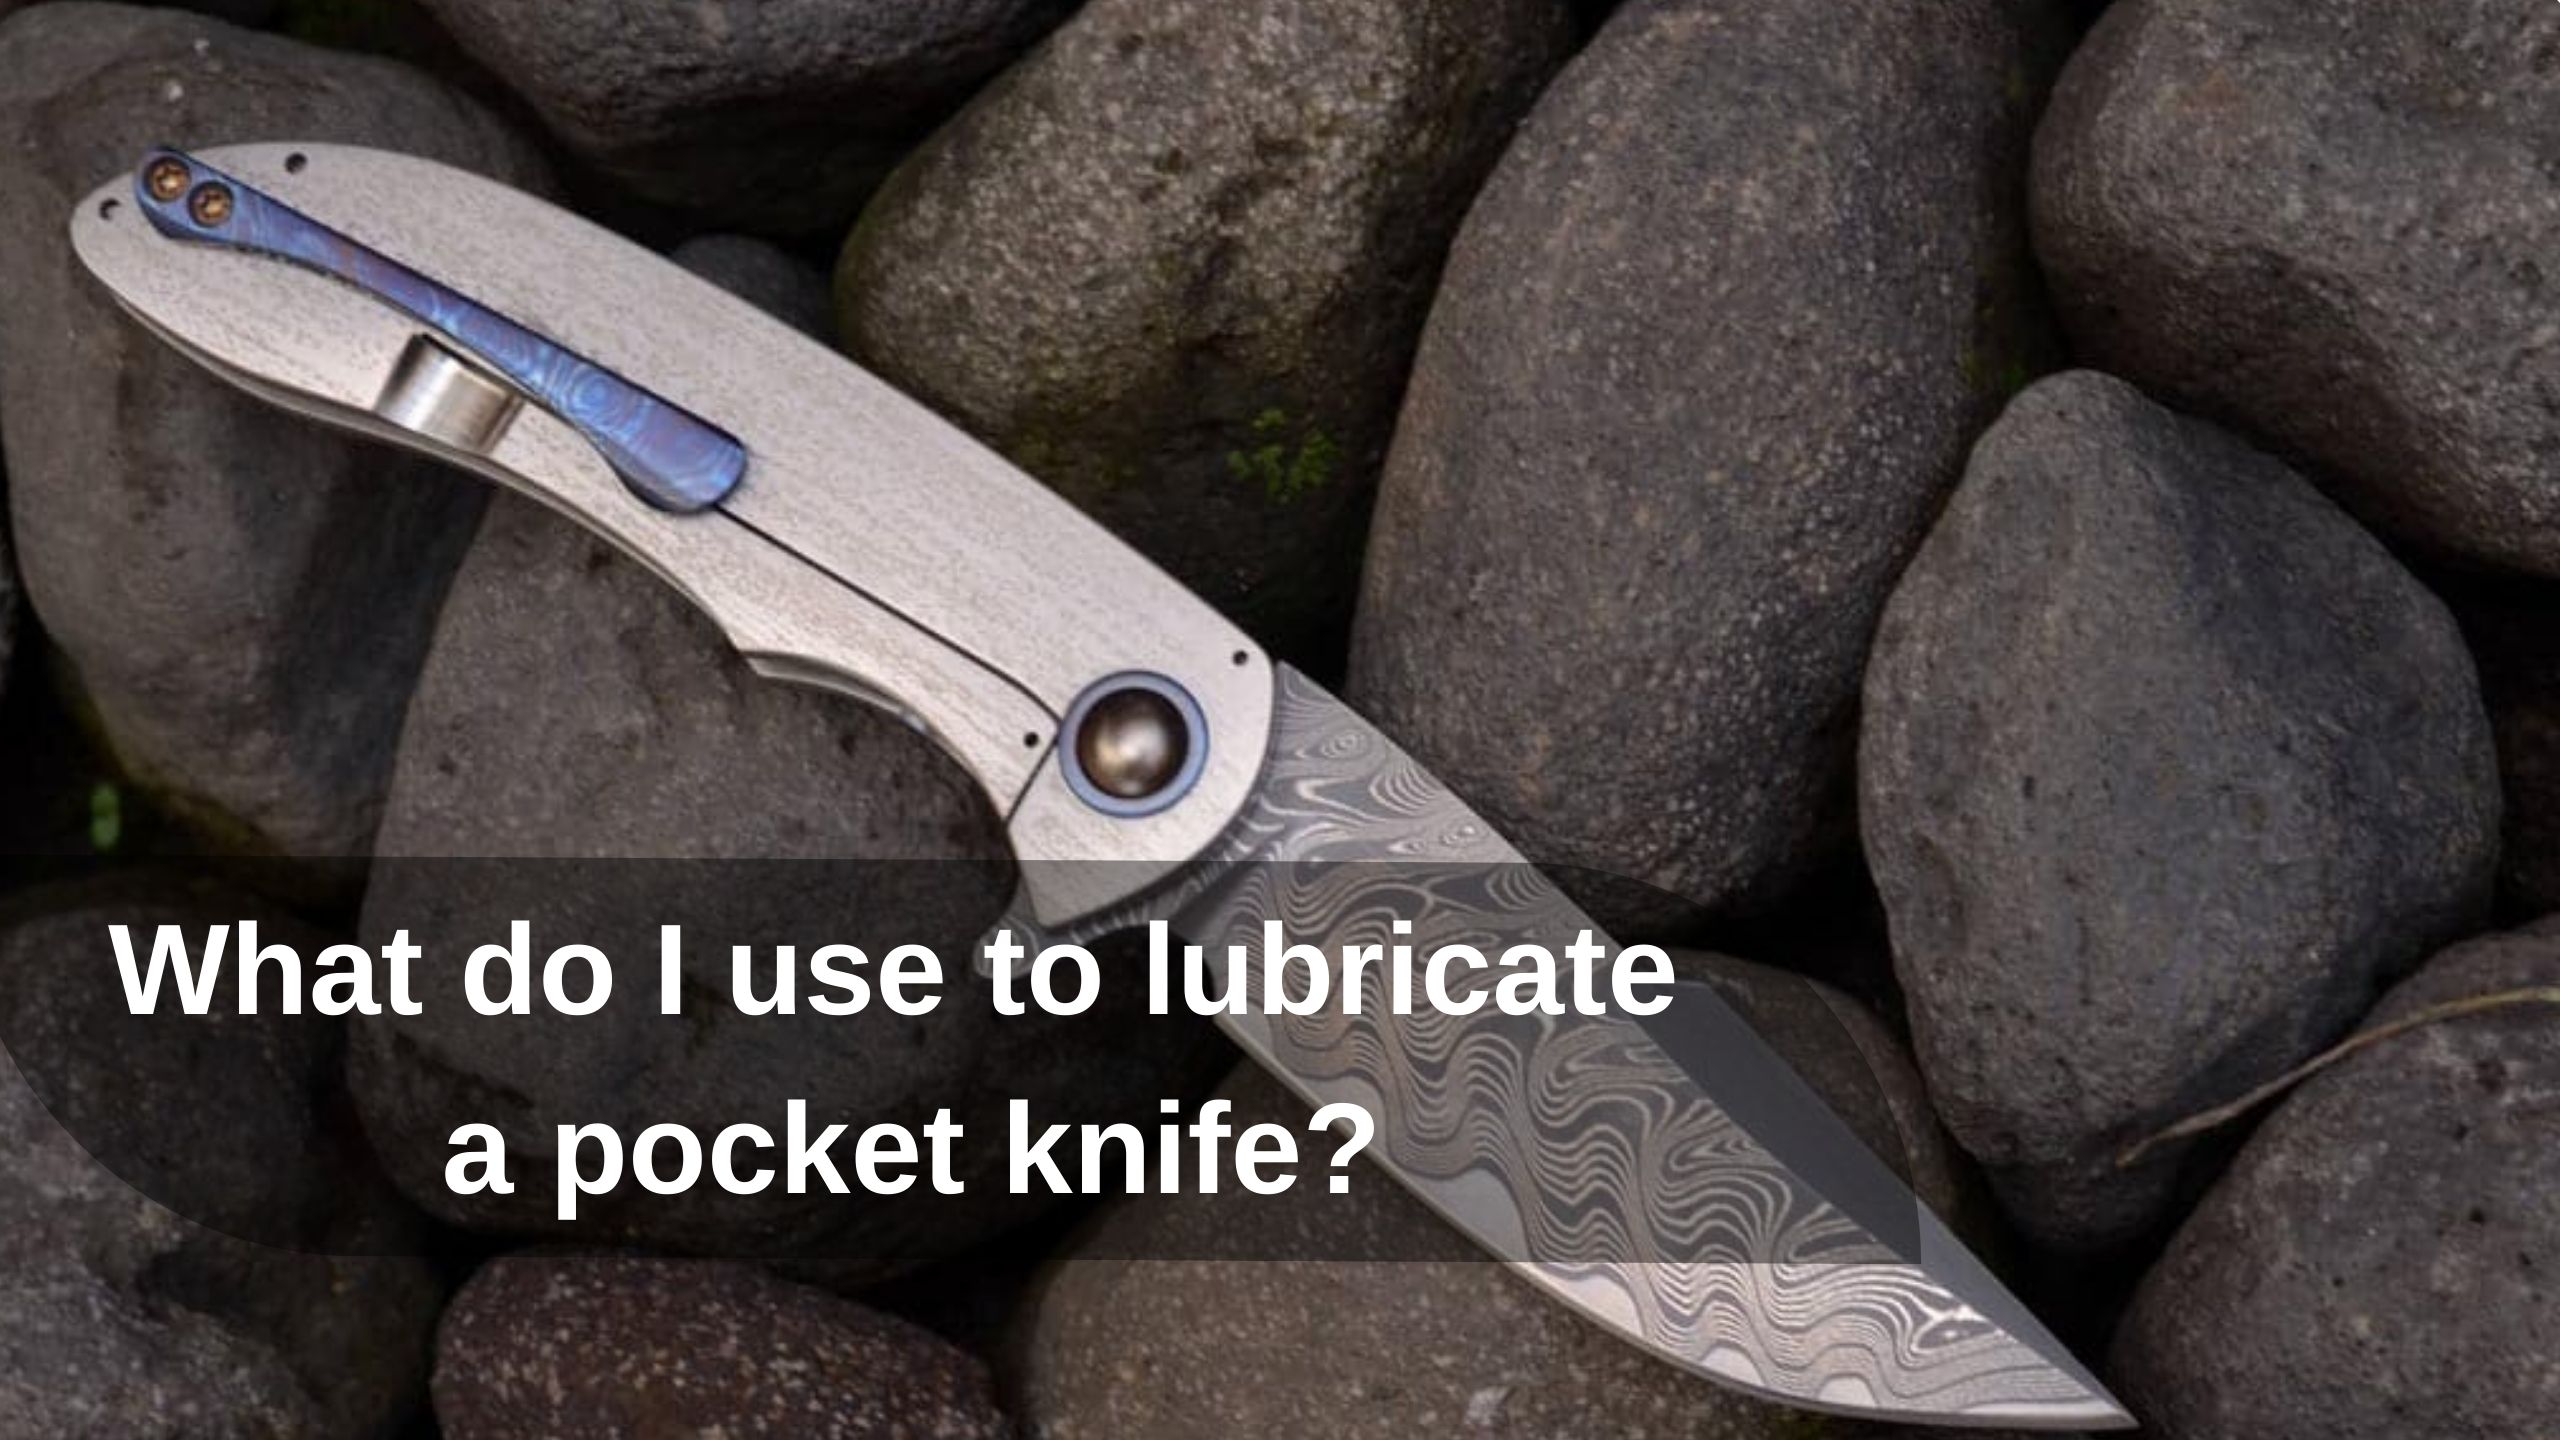 What do I use to lubricate a pocket knife?